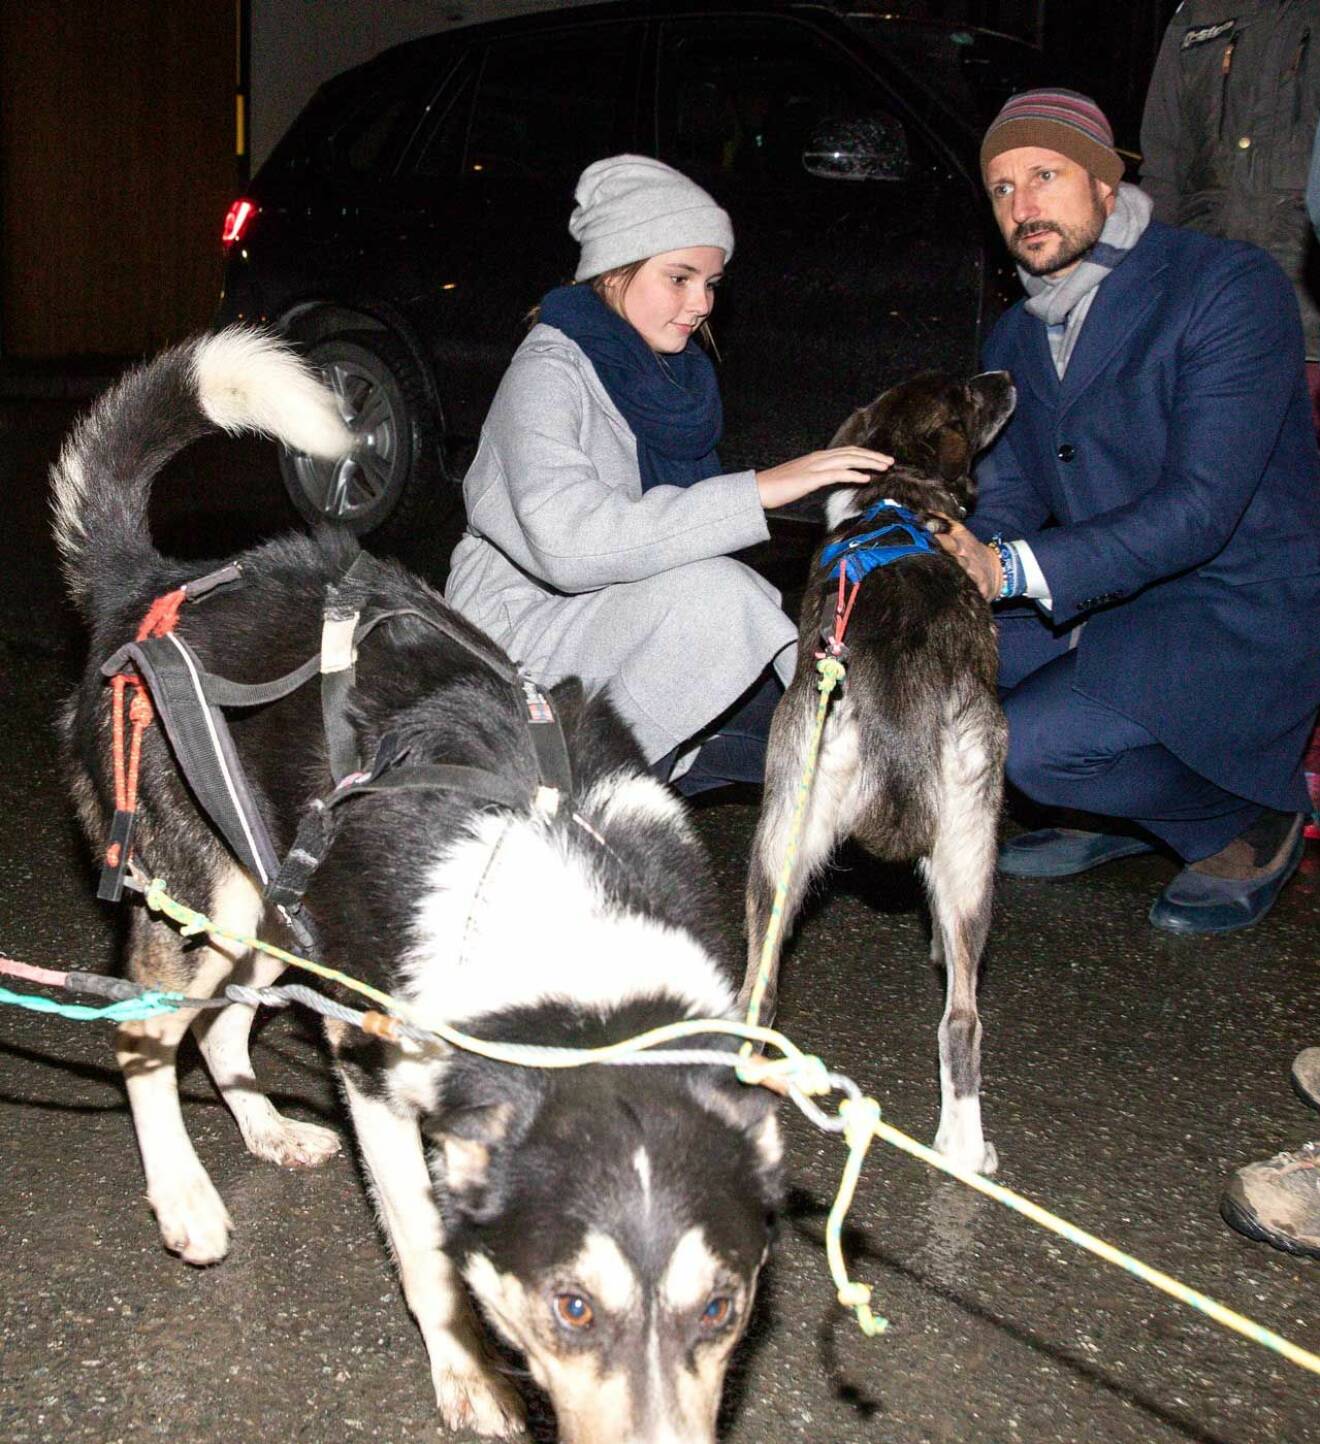 Prinsessan Ingrid Alexandra och kronprins Haakon klappar hundarna i hundspannet.